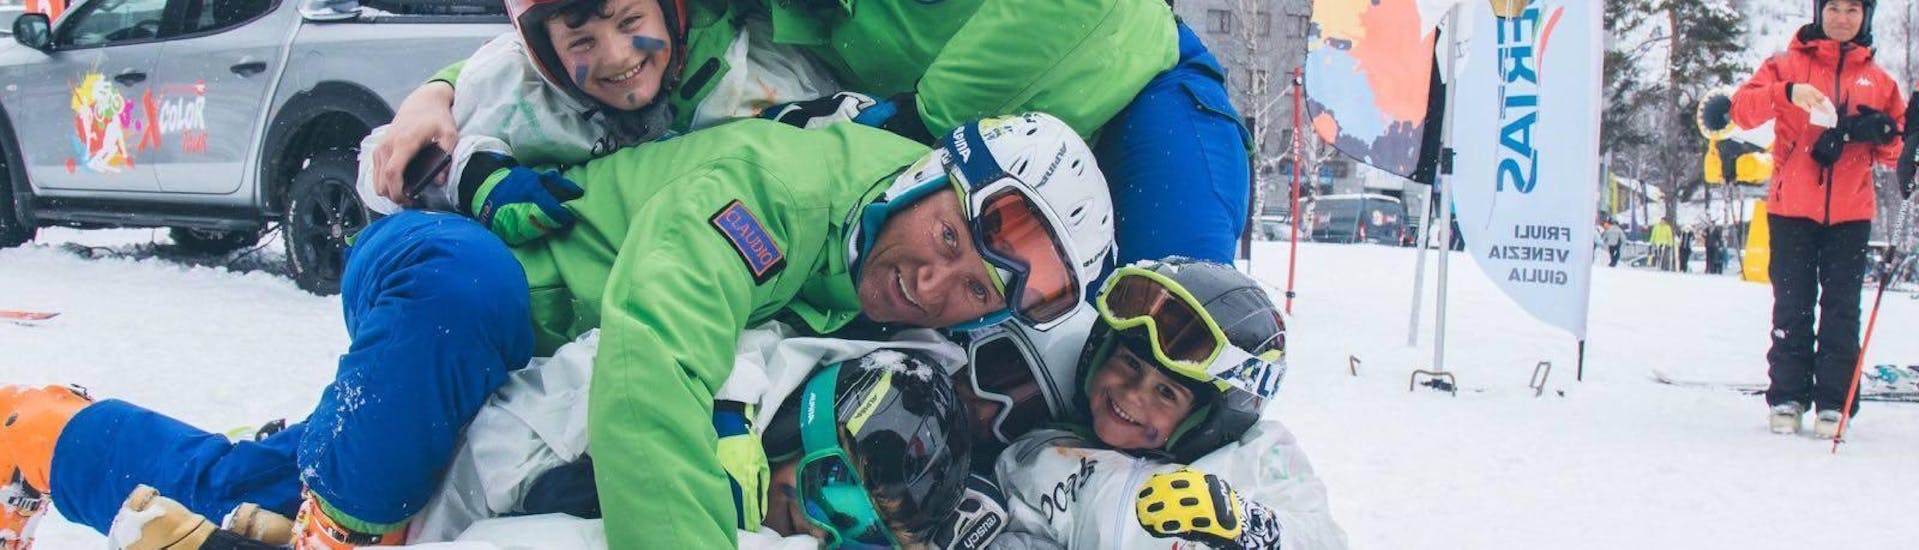 Tijdens de kinderskilessen (3-6 j.) - alle niveaus - kerst vermaken kinderen zich met een skileraar van de skischool Scuola di Sci B.foxes.